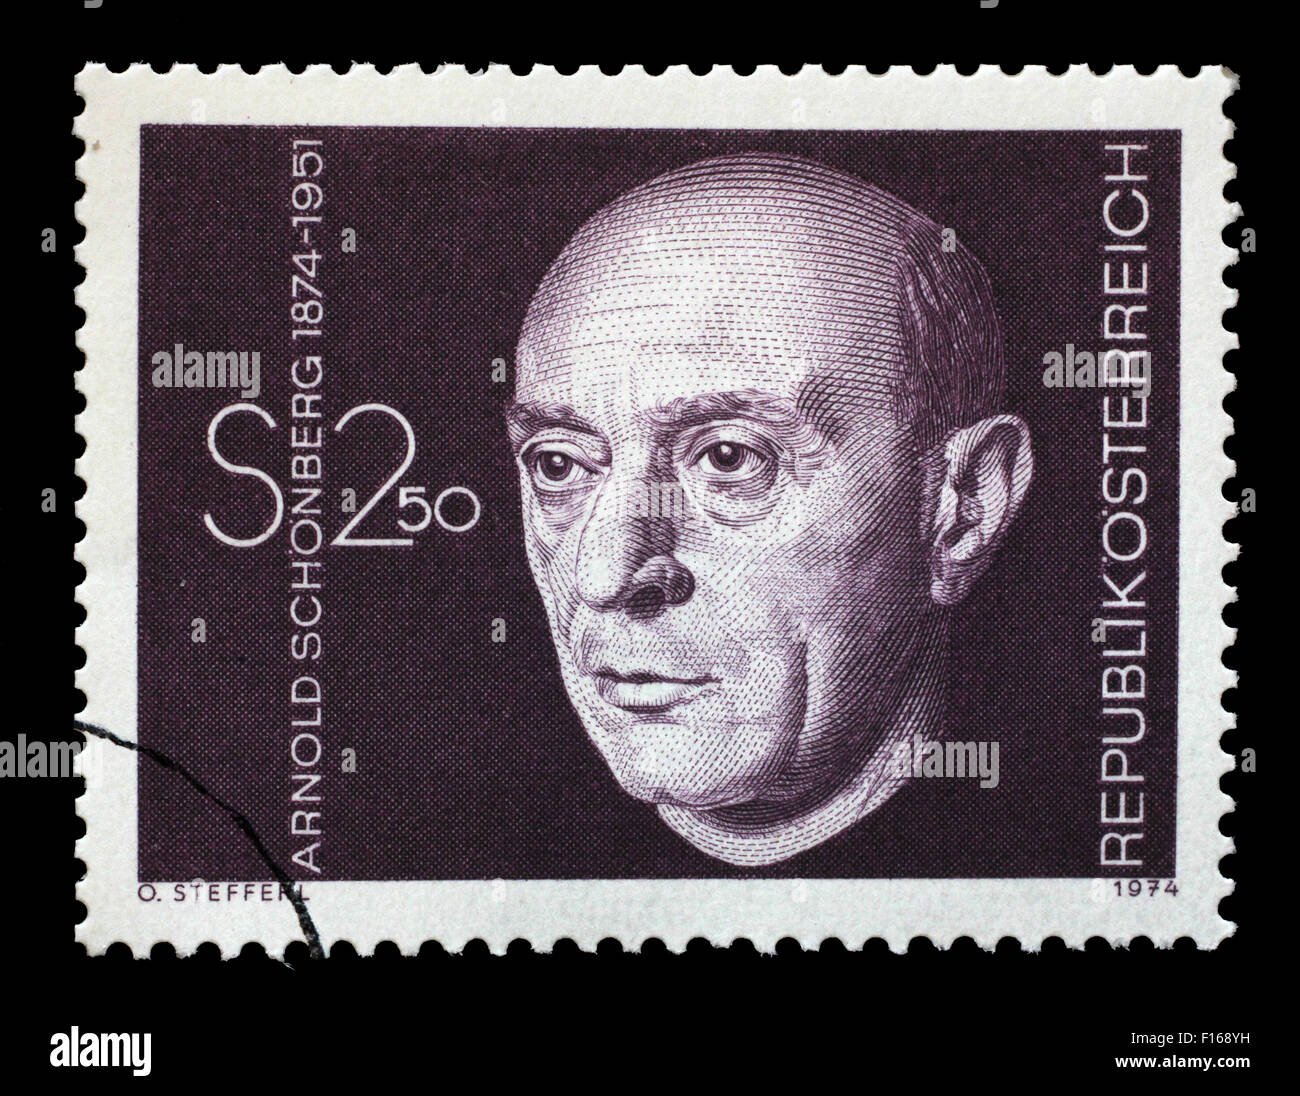 Briefmarke gedruckt in Österreich zeigt Arnold Schönberg, Komponist, ca. 1974 Stockfoto